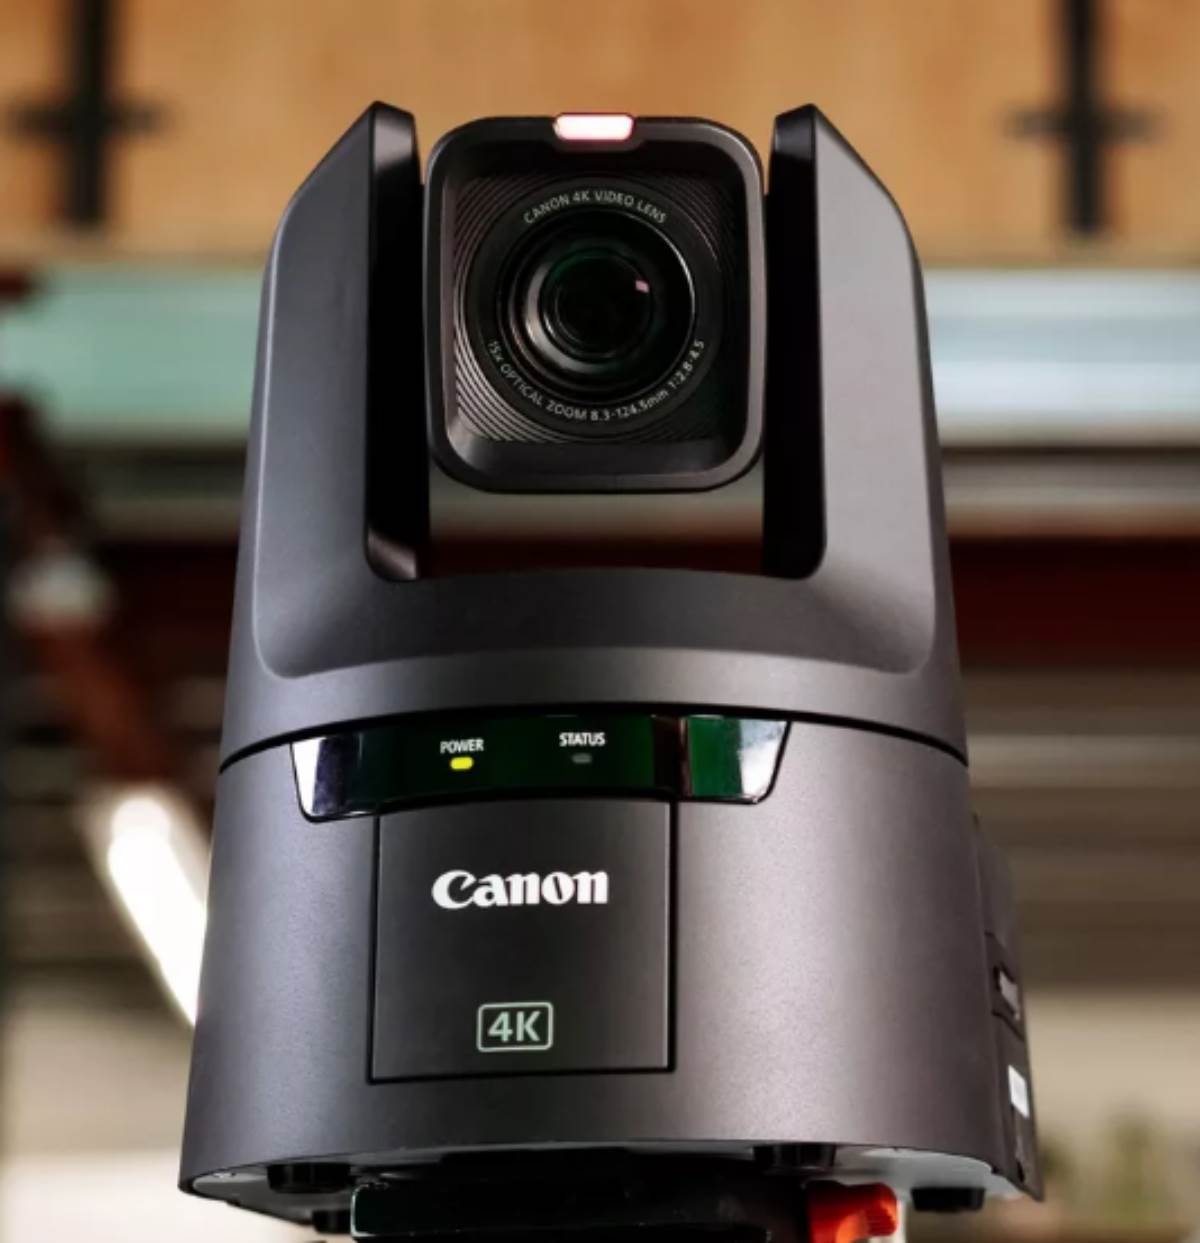 Nueva cámara profesional PTZ CR-N700 de Canon diseñada para los profesionales del broadcast